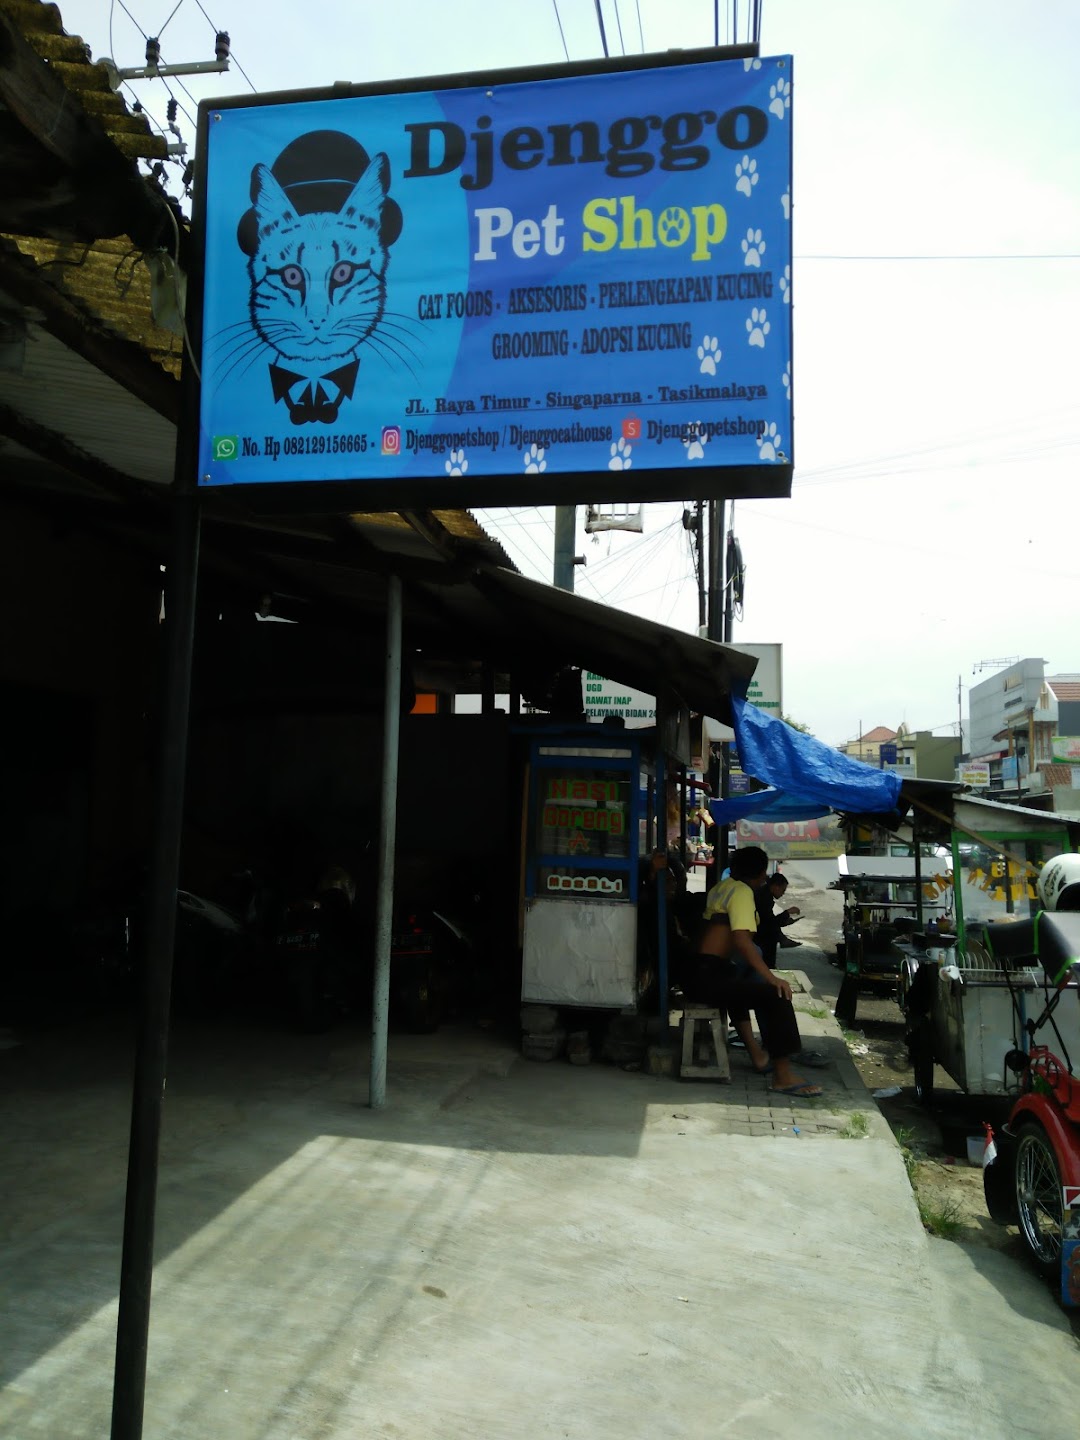 Djenggo Pet Shop